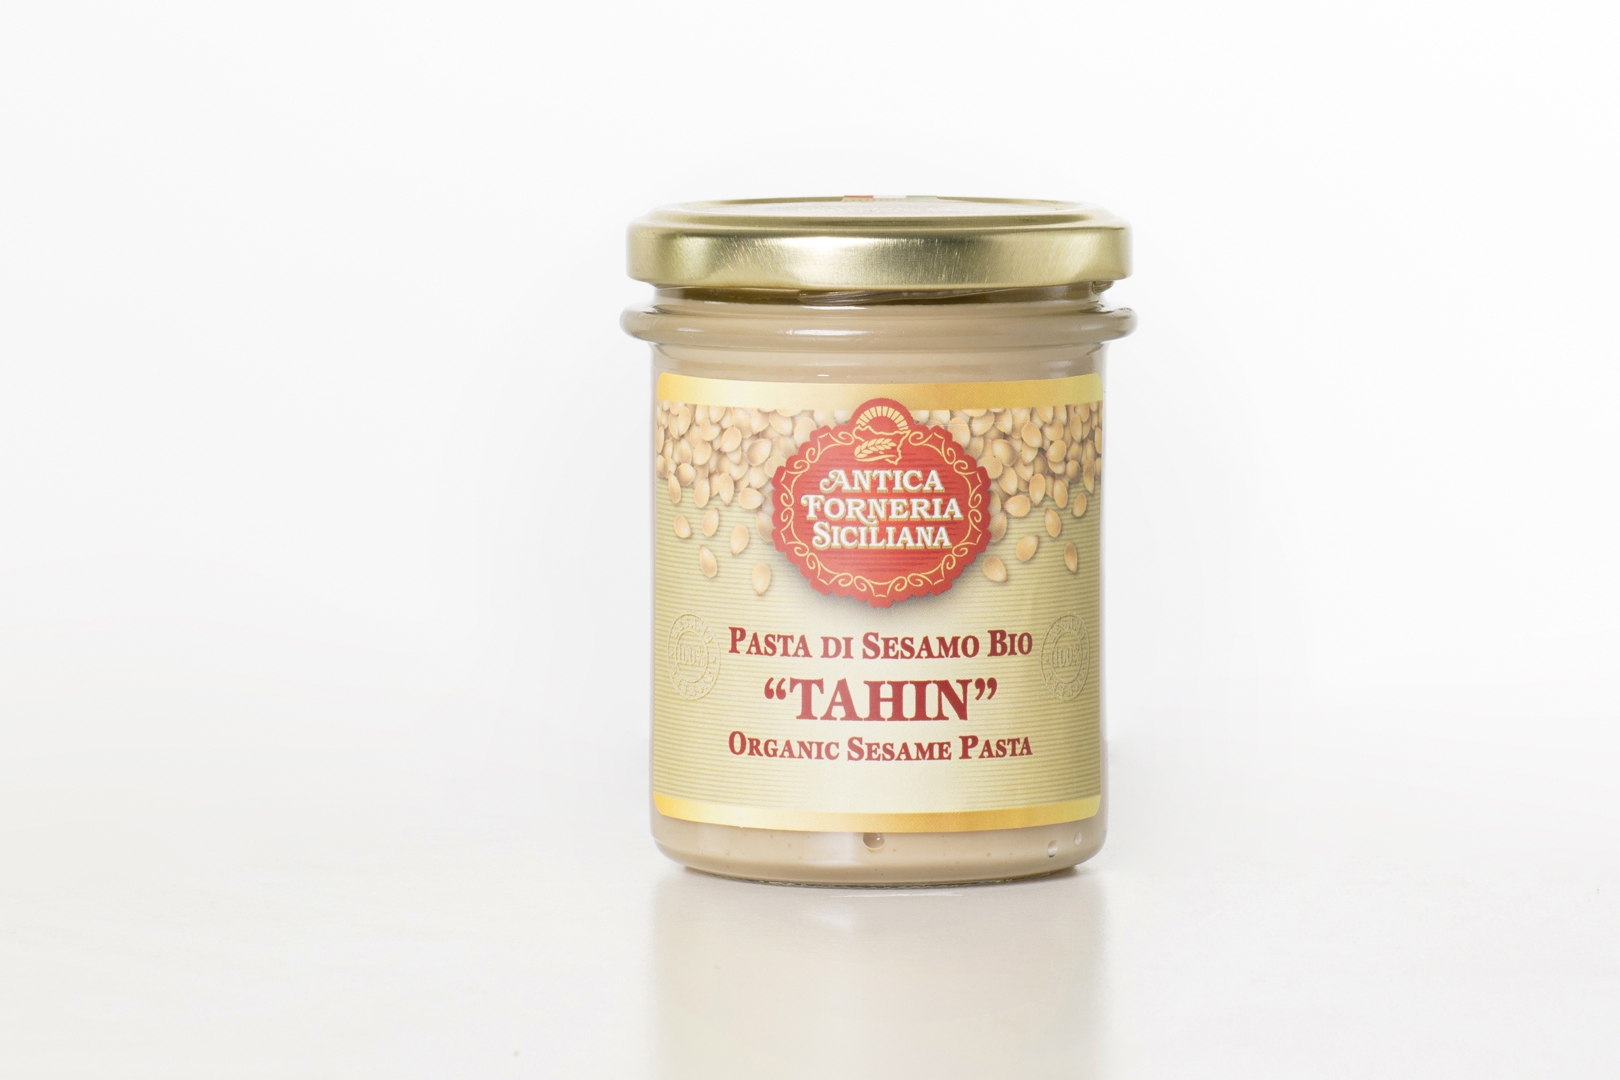 Pasta di Sesamo Bio “Tahin” (200gr) - Antica Forneria Siciliana